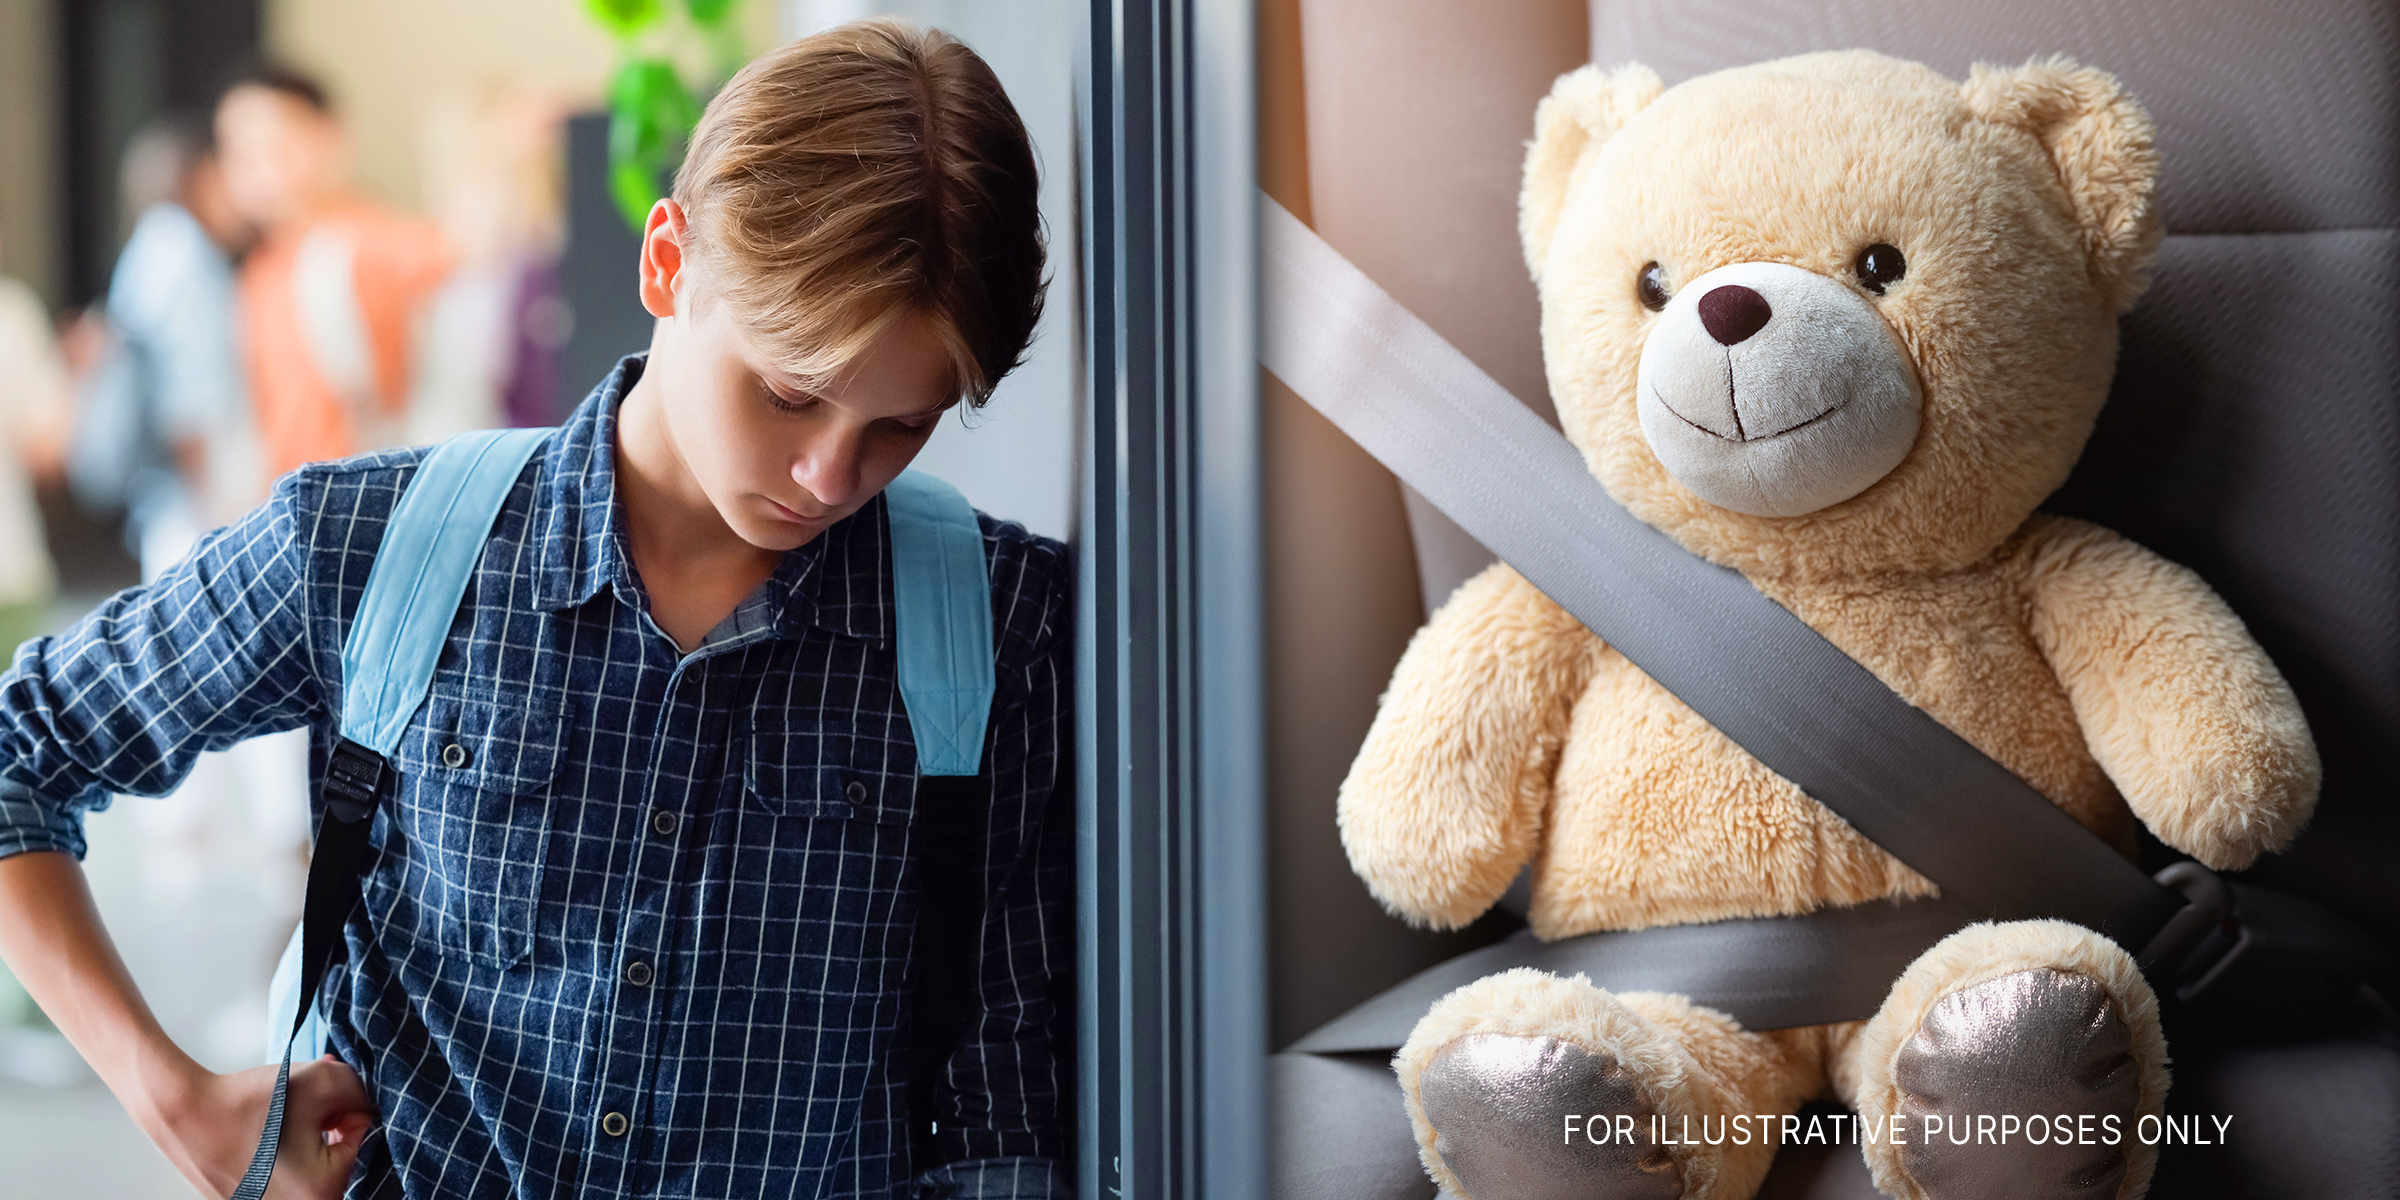 An upset boy and a teddy bear | Source: Shutterstock